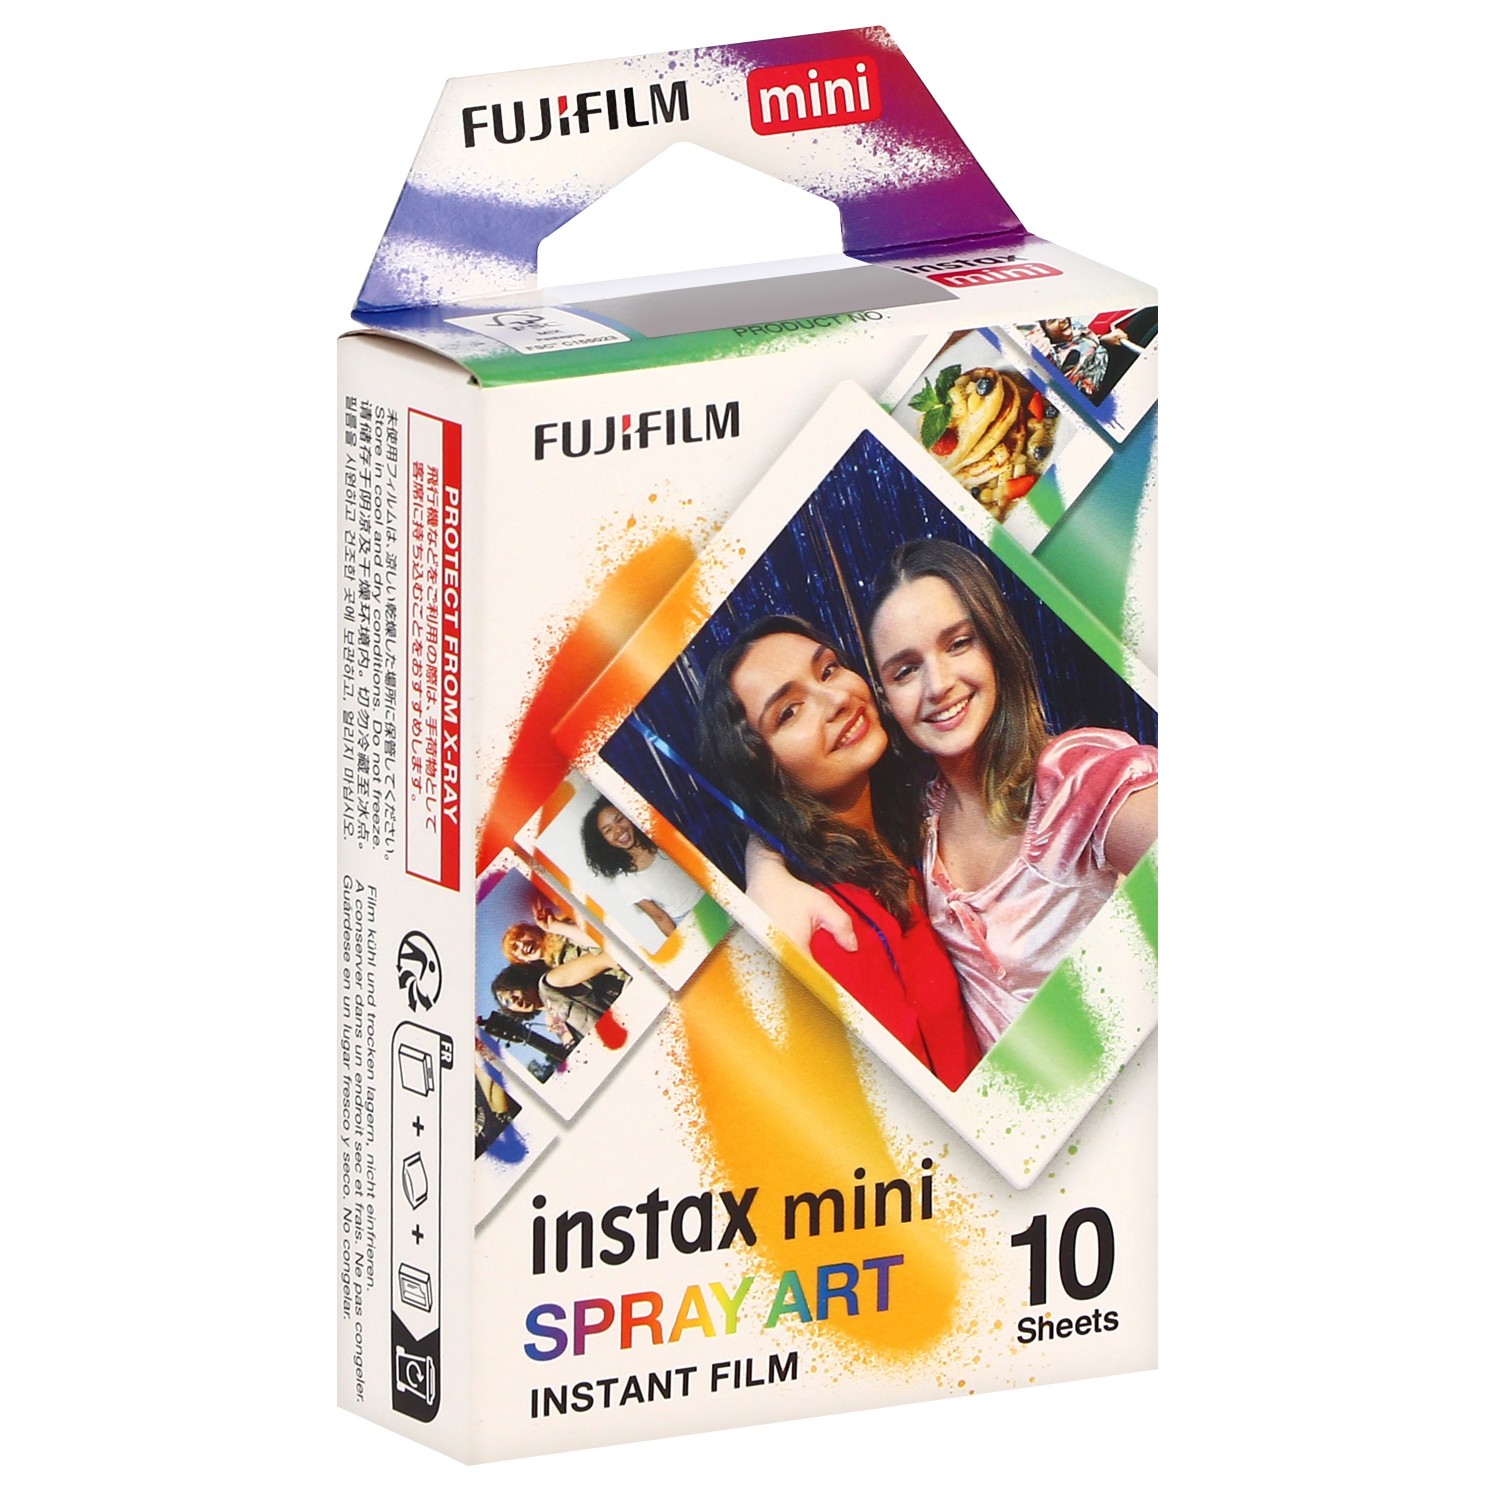 Pellicule Photo Polaroid, film instantané Fujifilm instax wide et mini